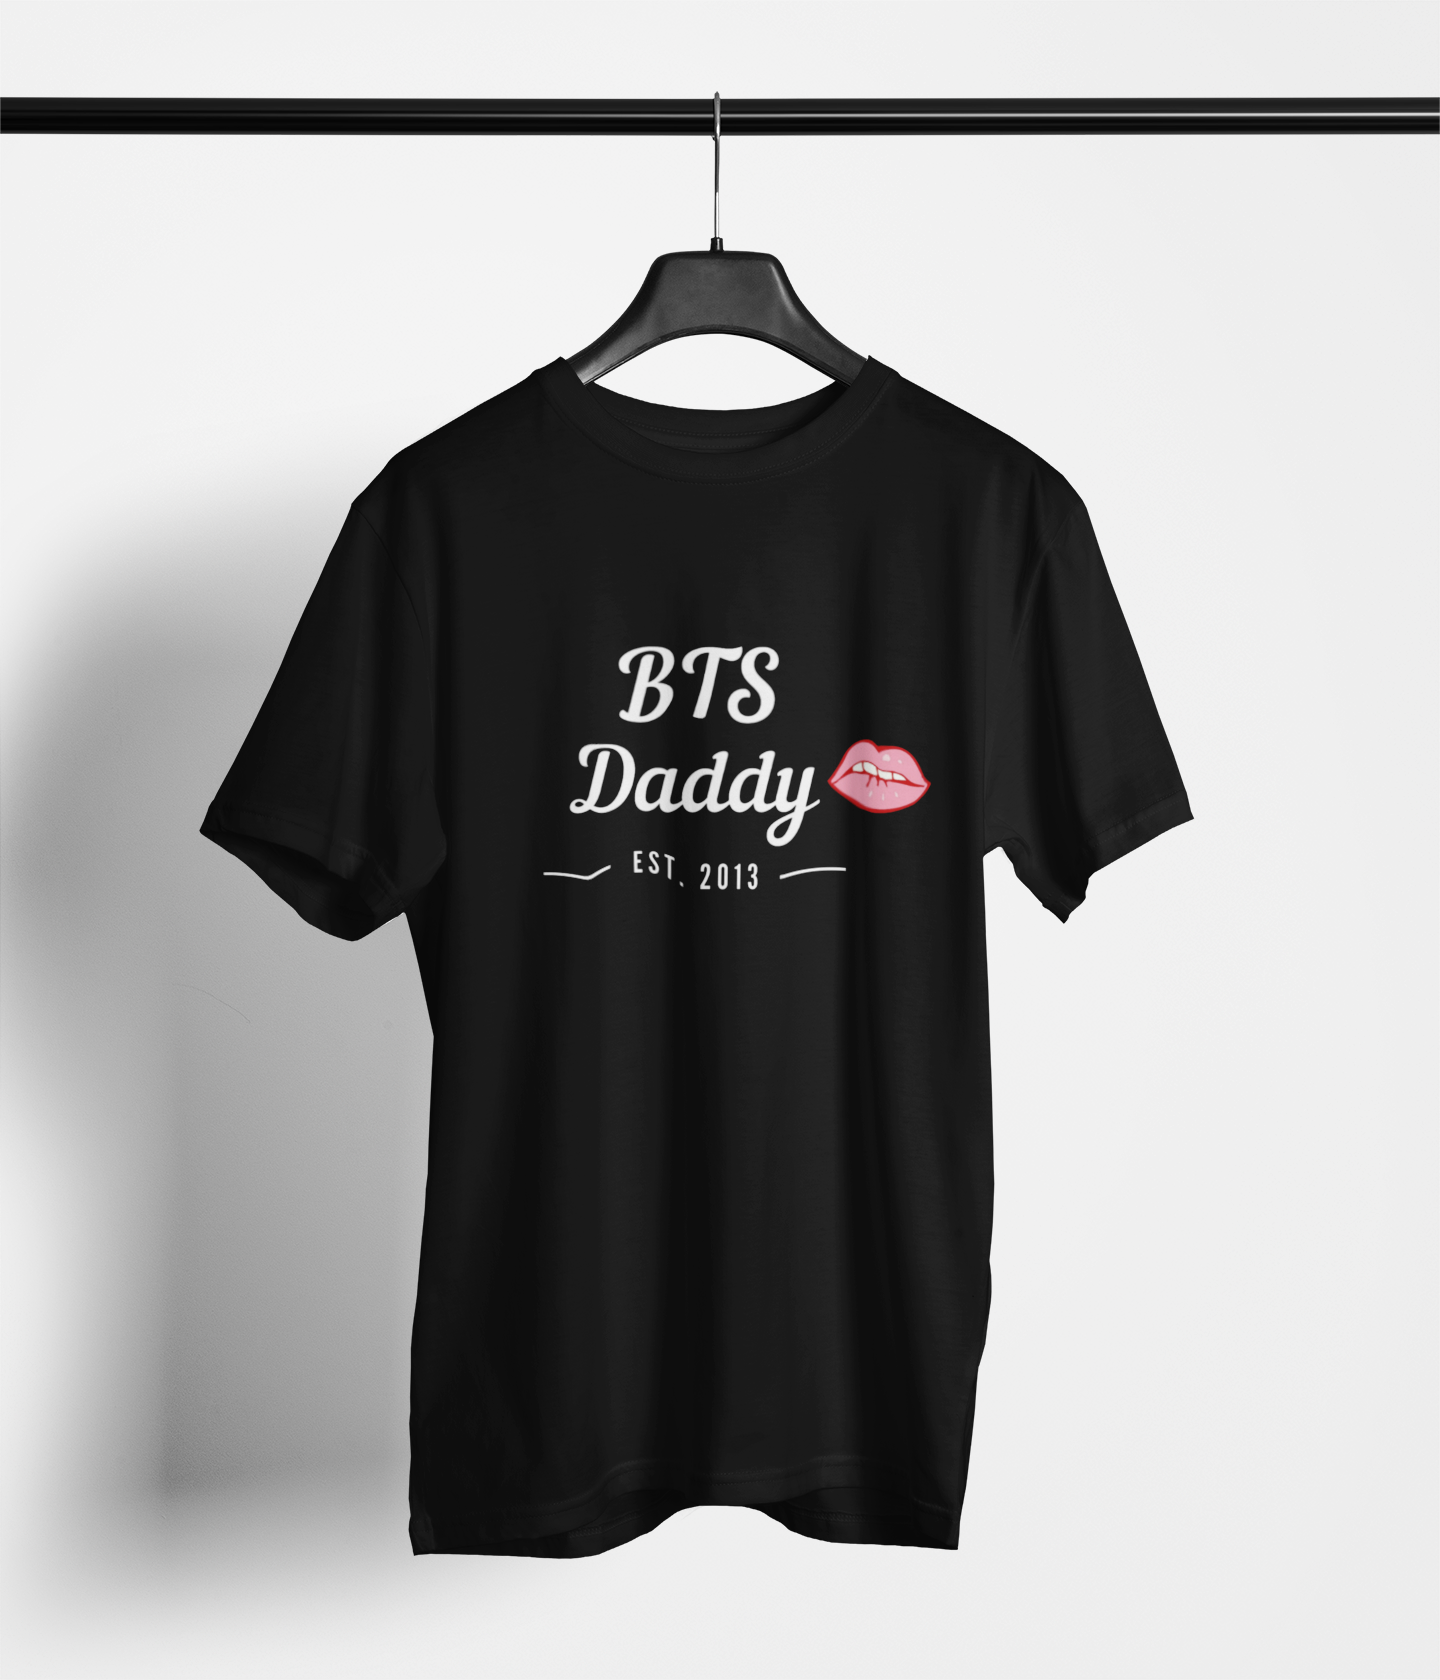 BTS Daddy Tshirt